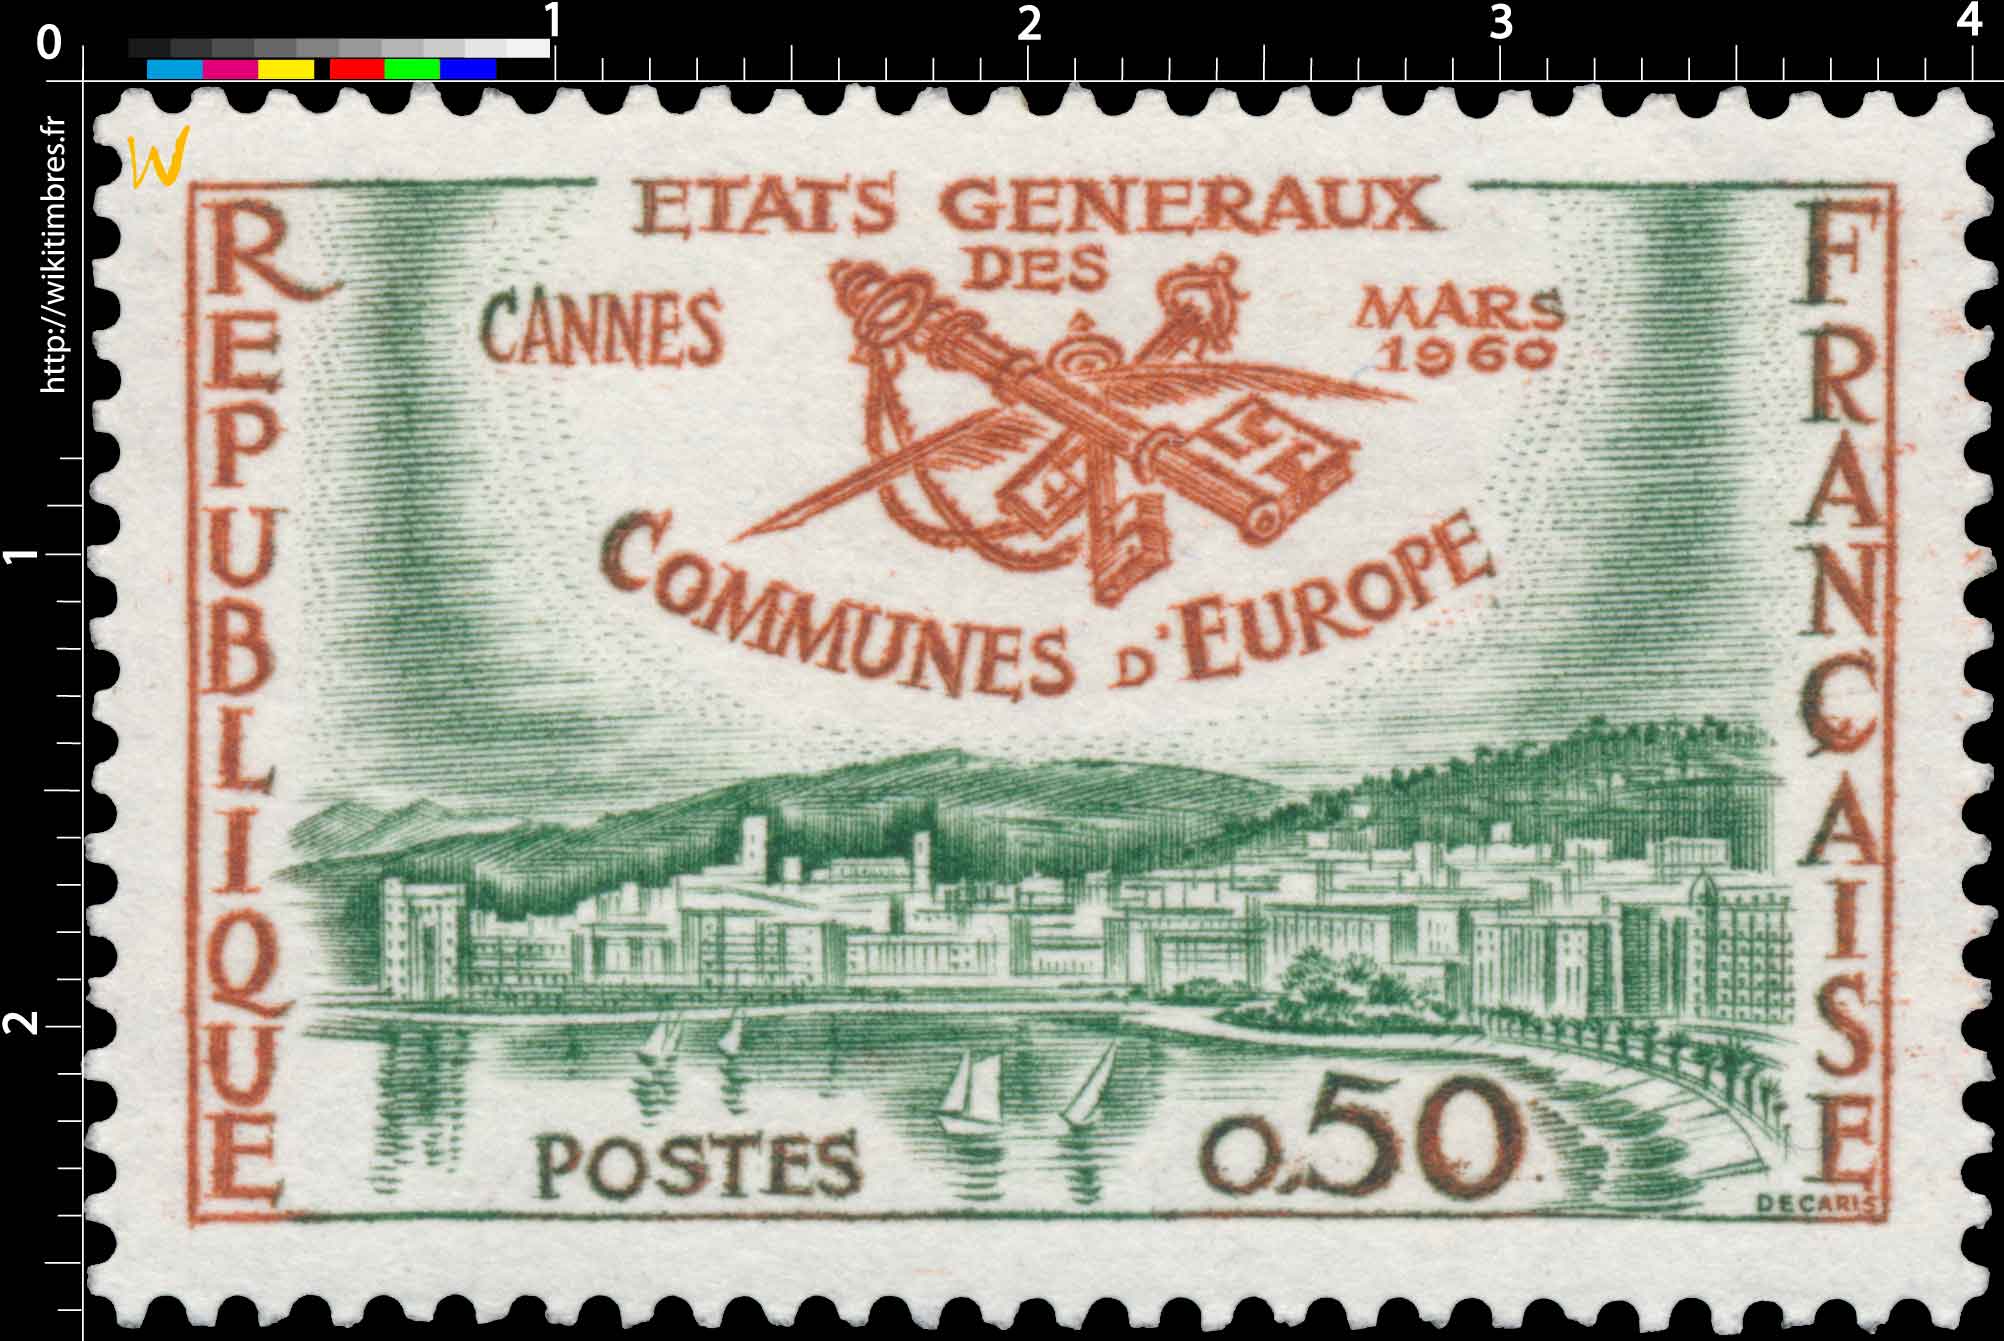 ÉTATS GÉNÉRAUX DES COMMUNES D’EUROPE CANNES MARS 1960